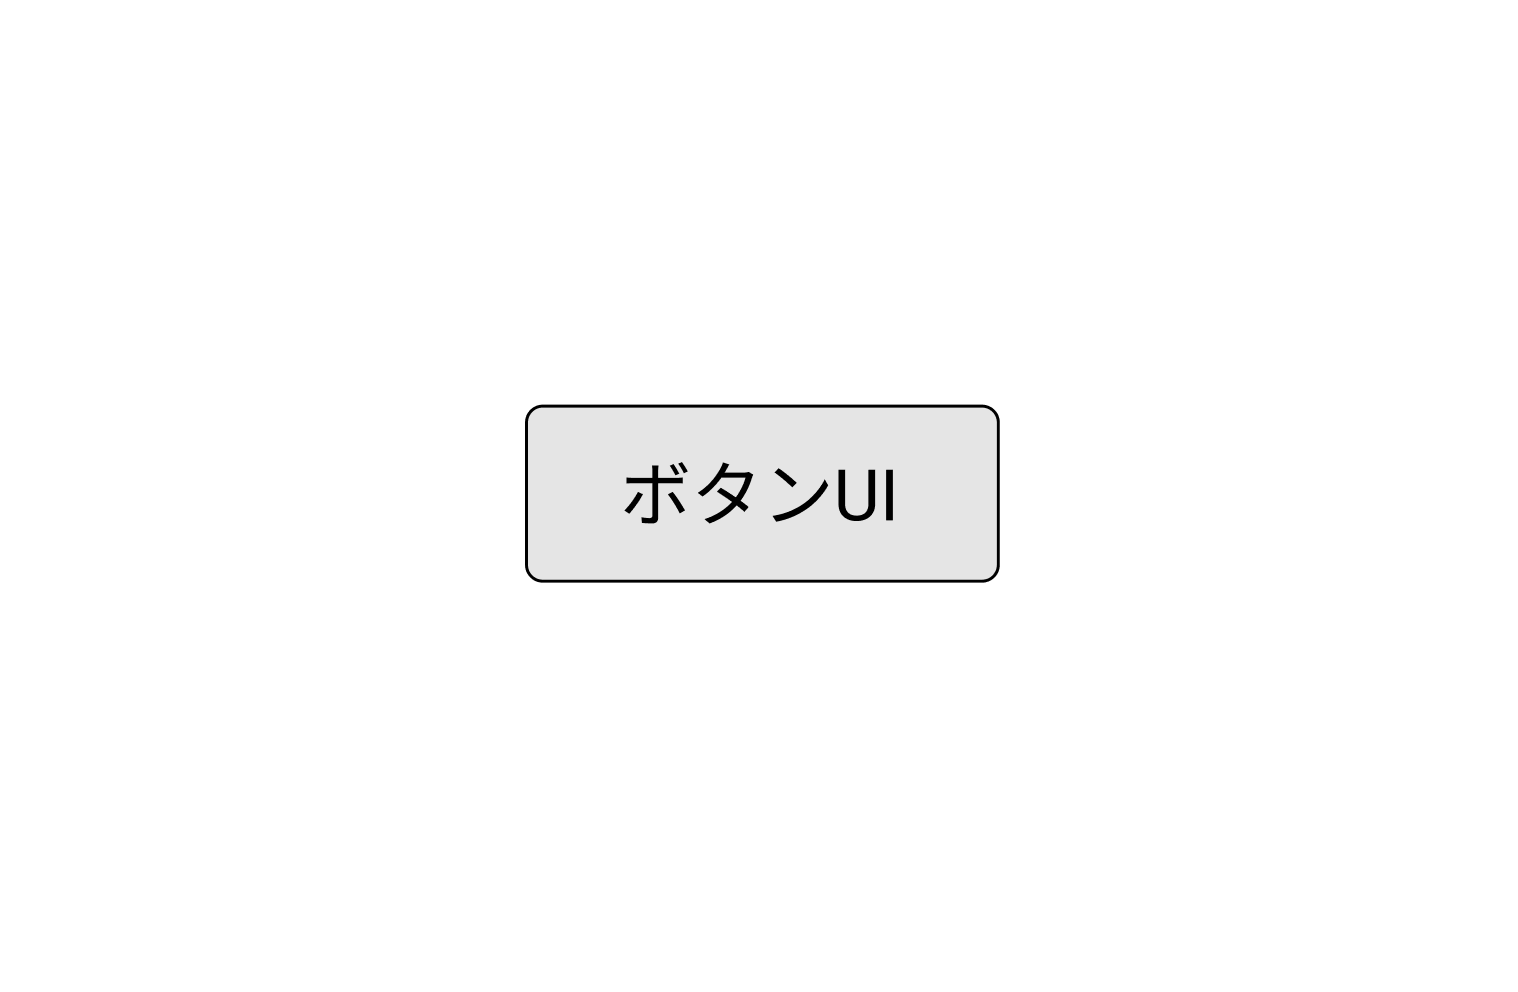 ボタン UI のイメージ図